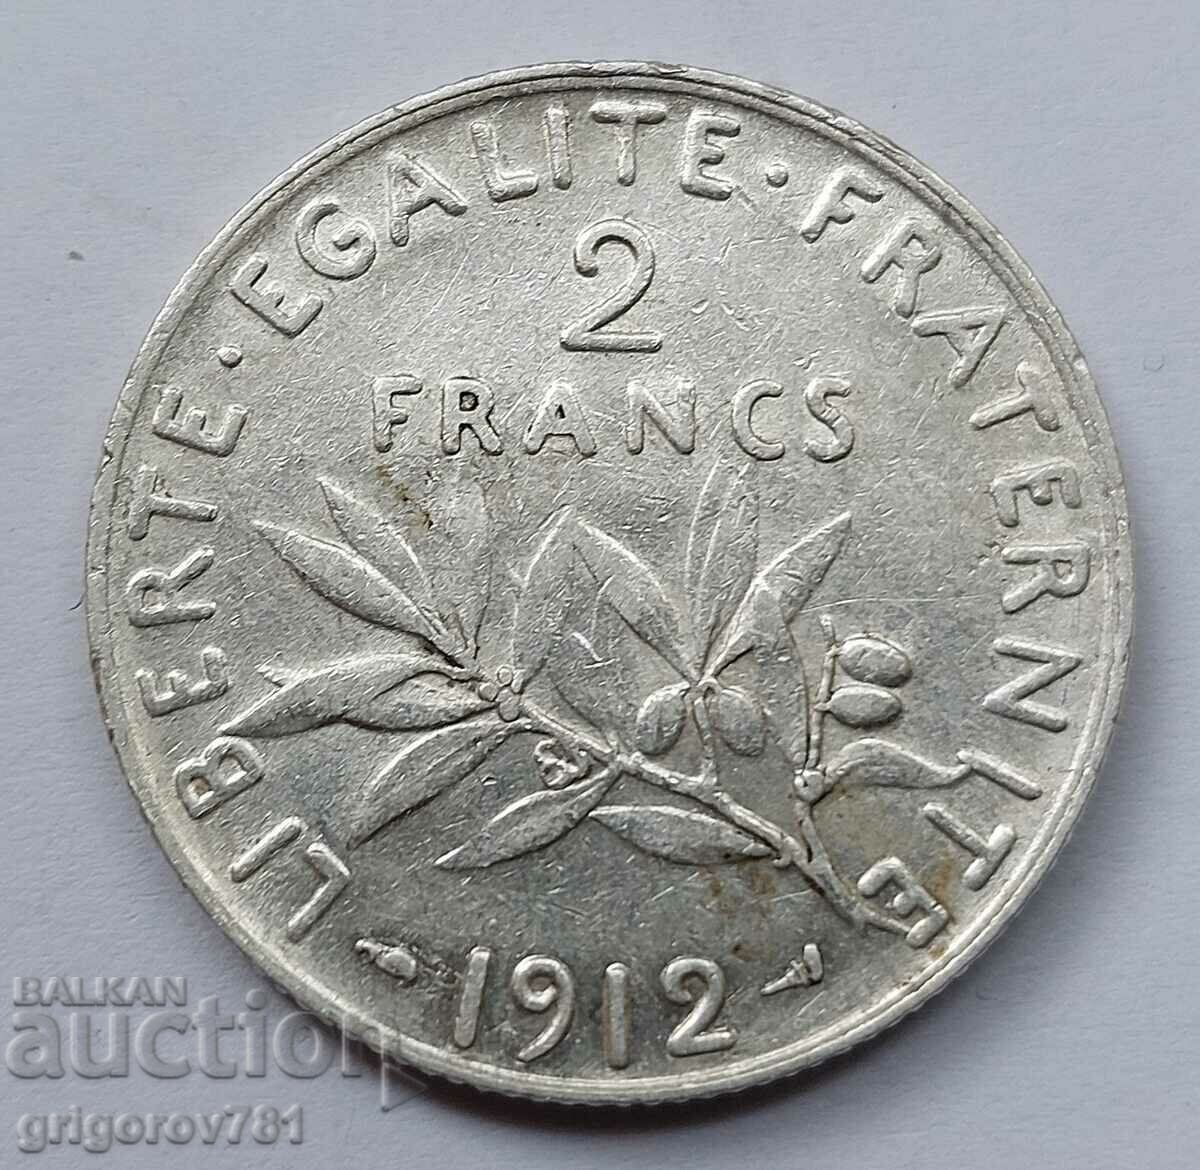 2 Franci Argint Franta 1912 - Moneda de argint #146